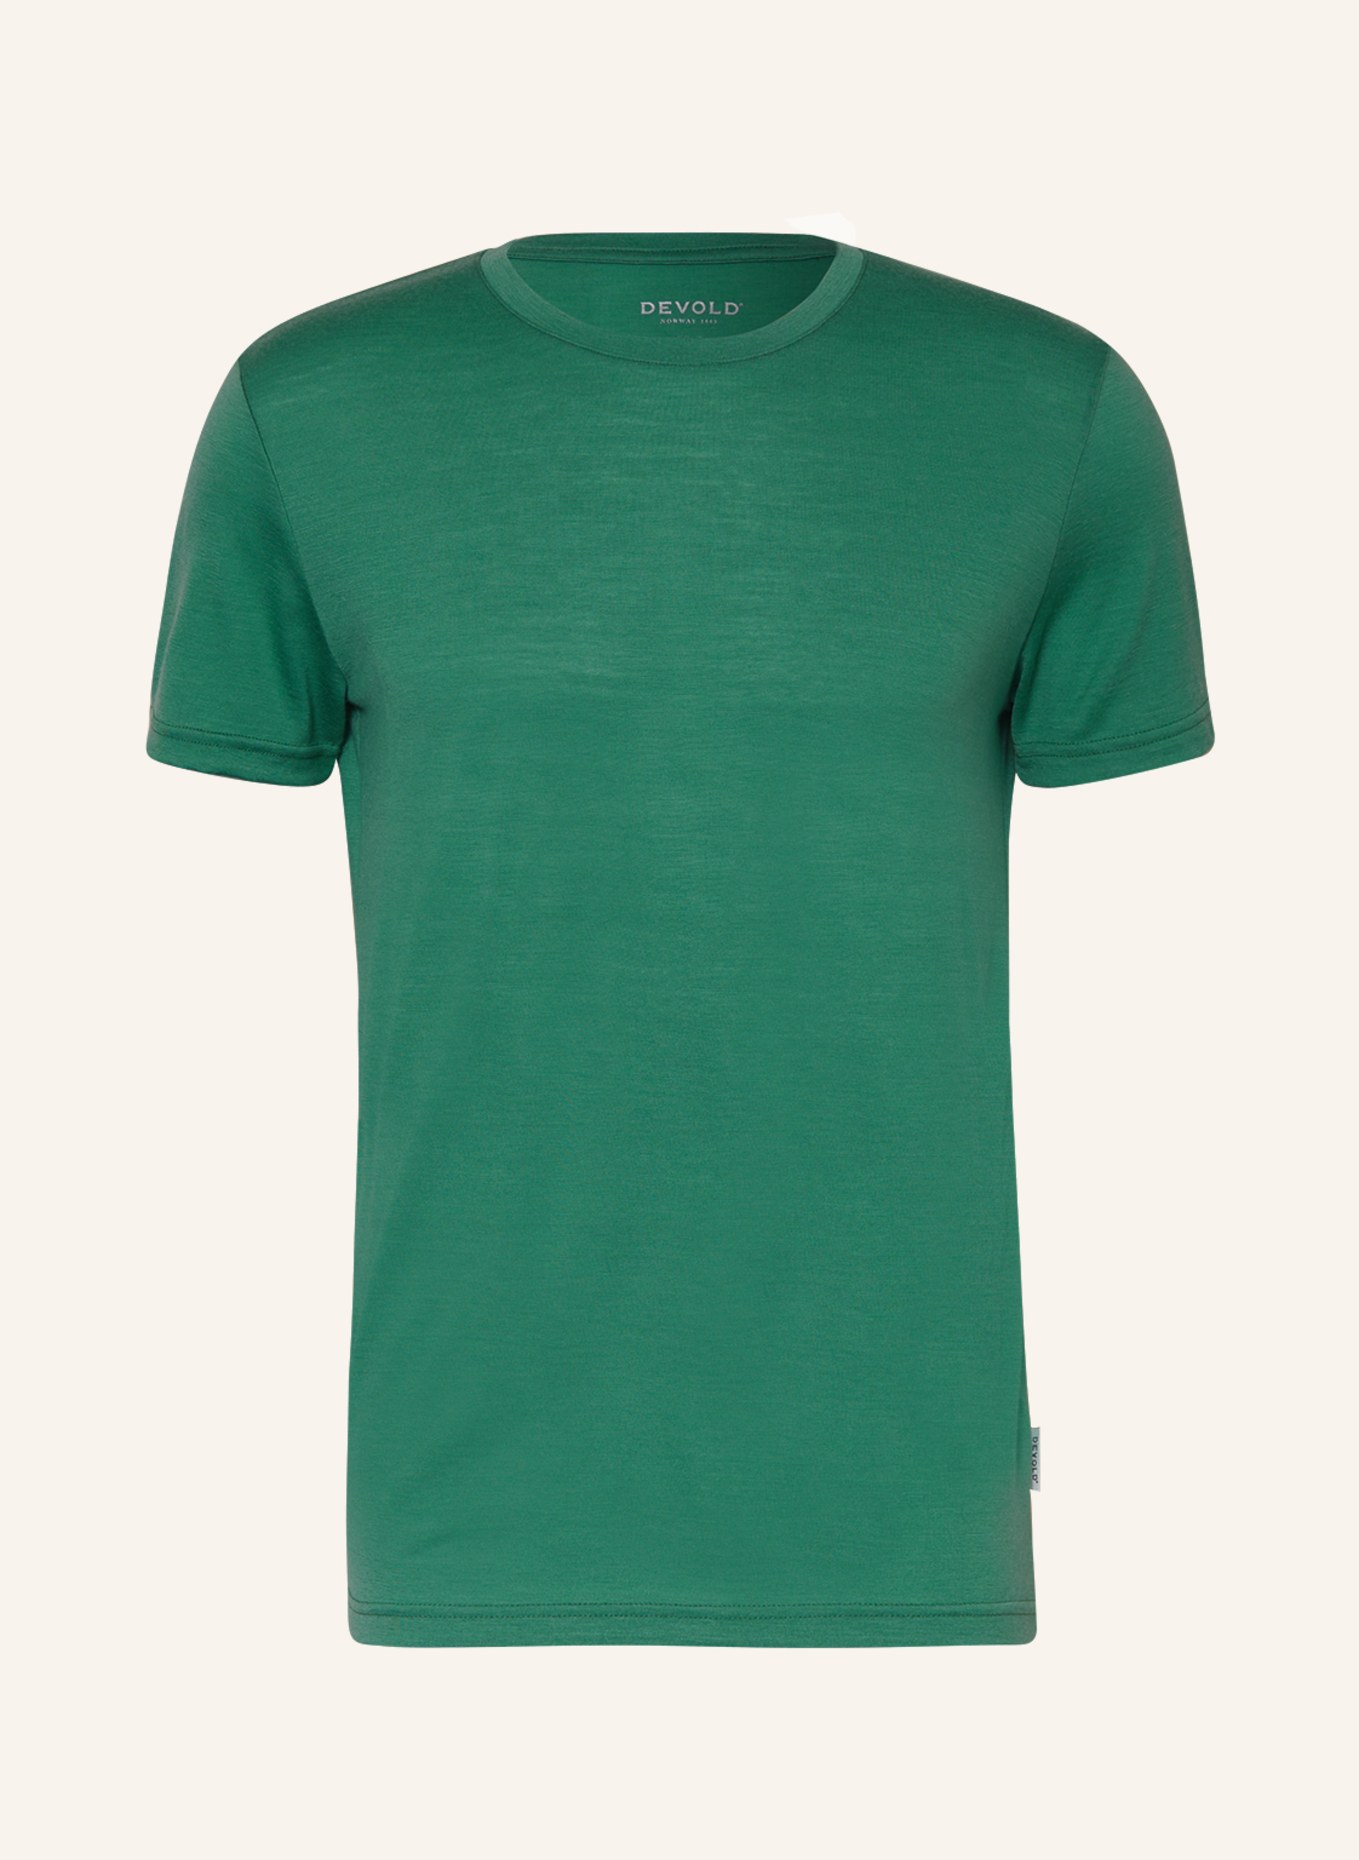 DEVOLD T-Shirt EIKA MERINO 150, Farbe: GRÜN (Bild 1)